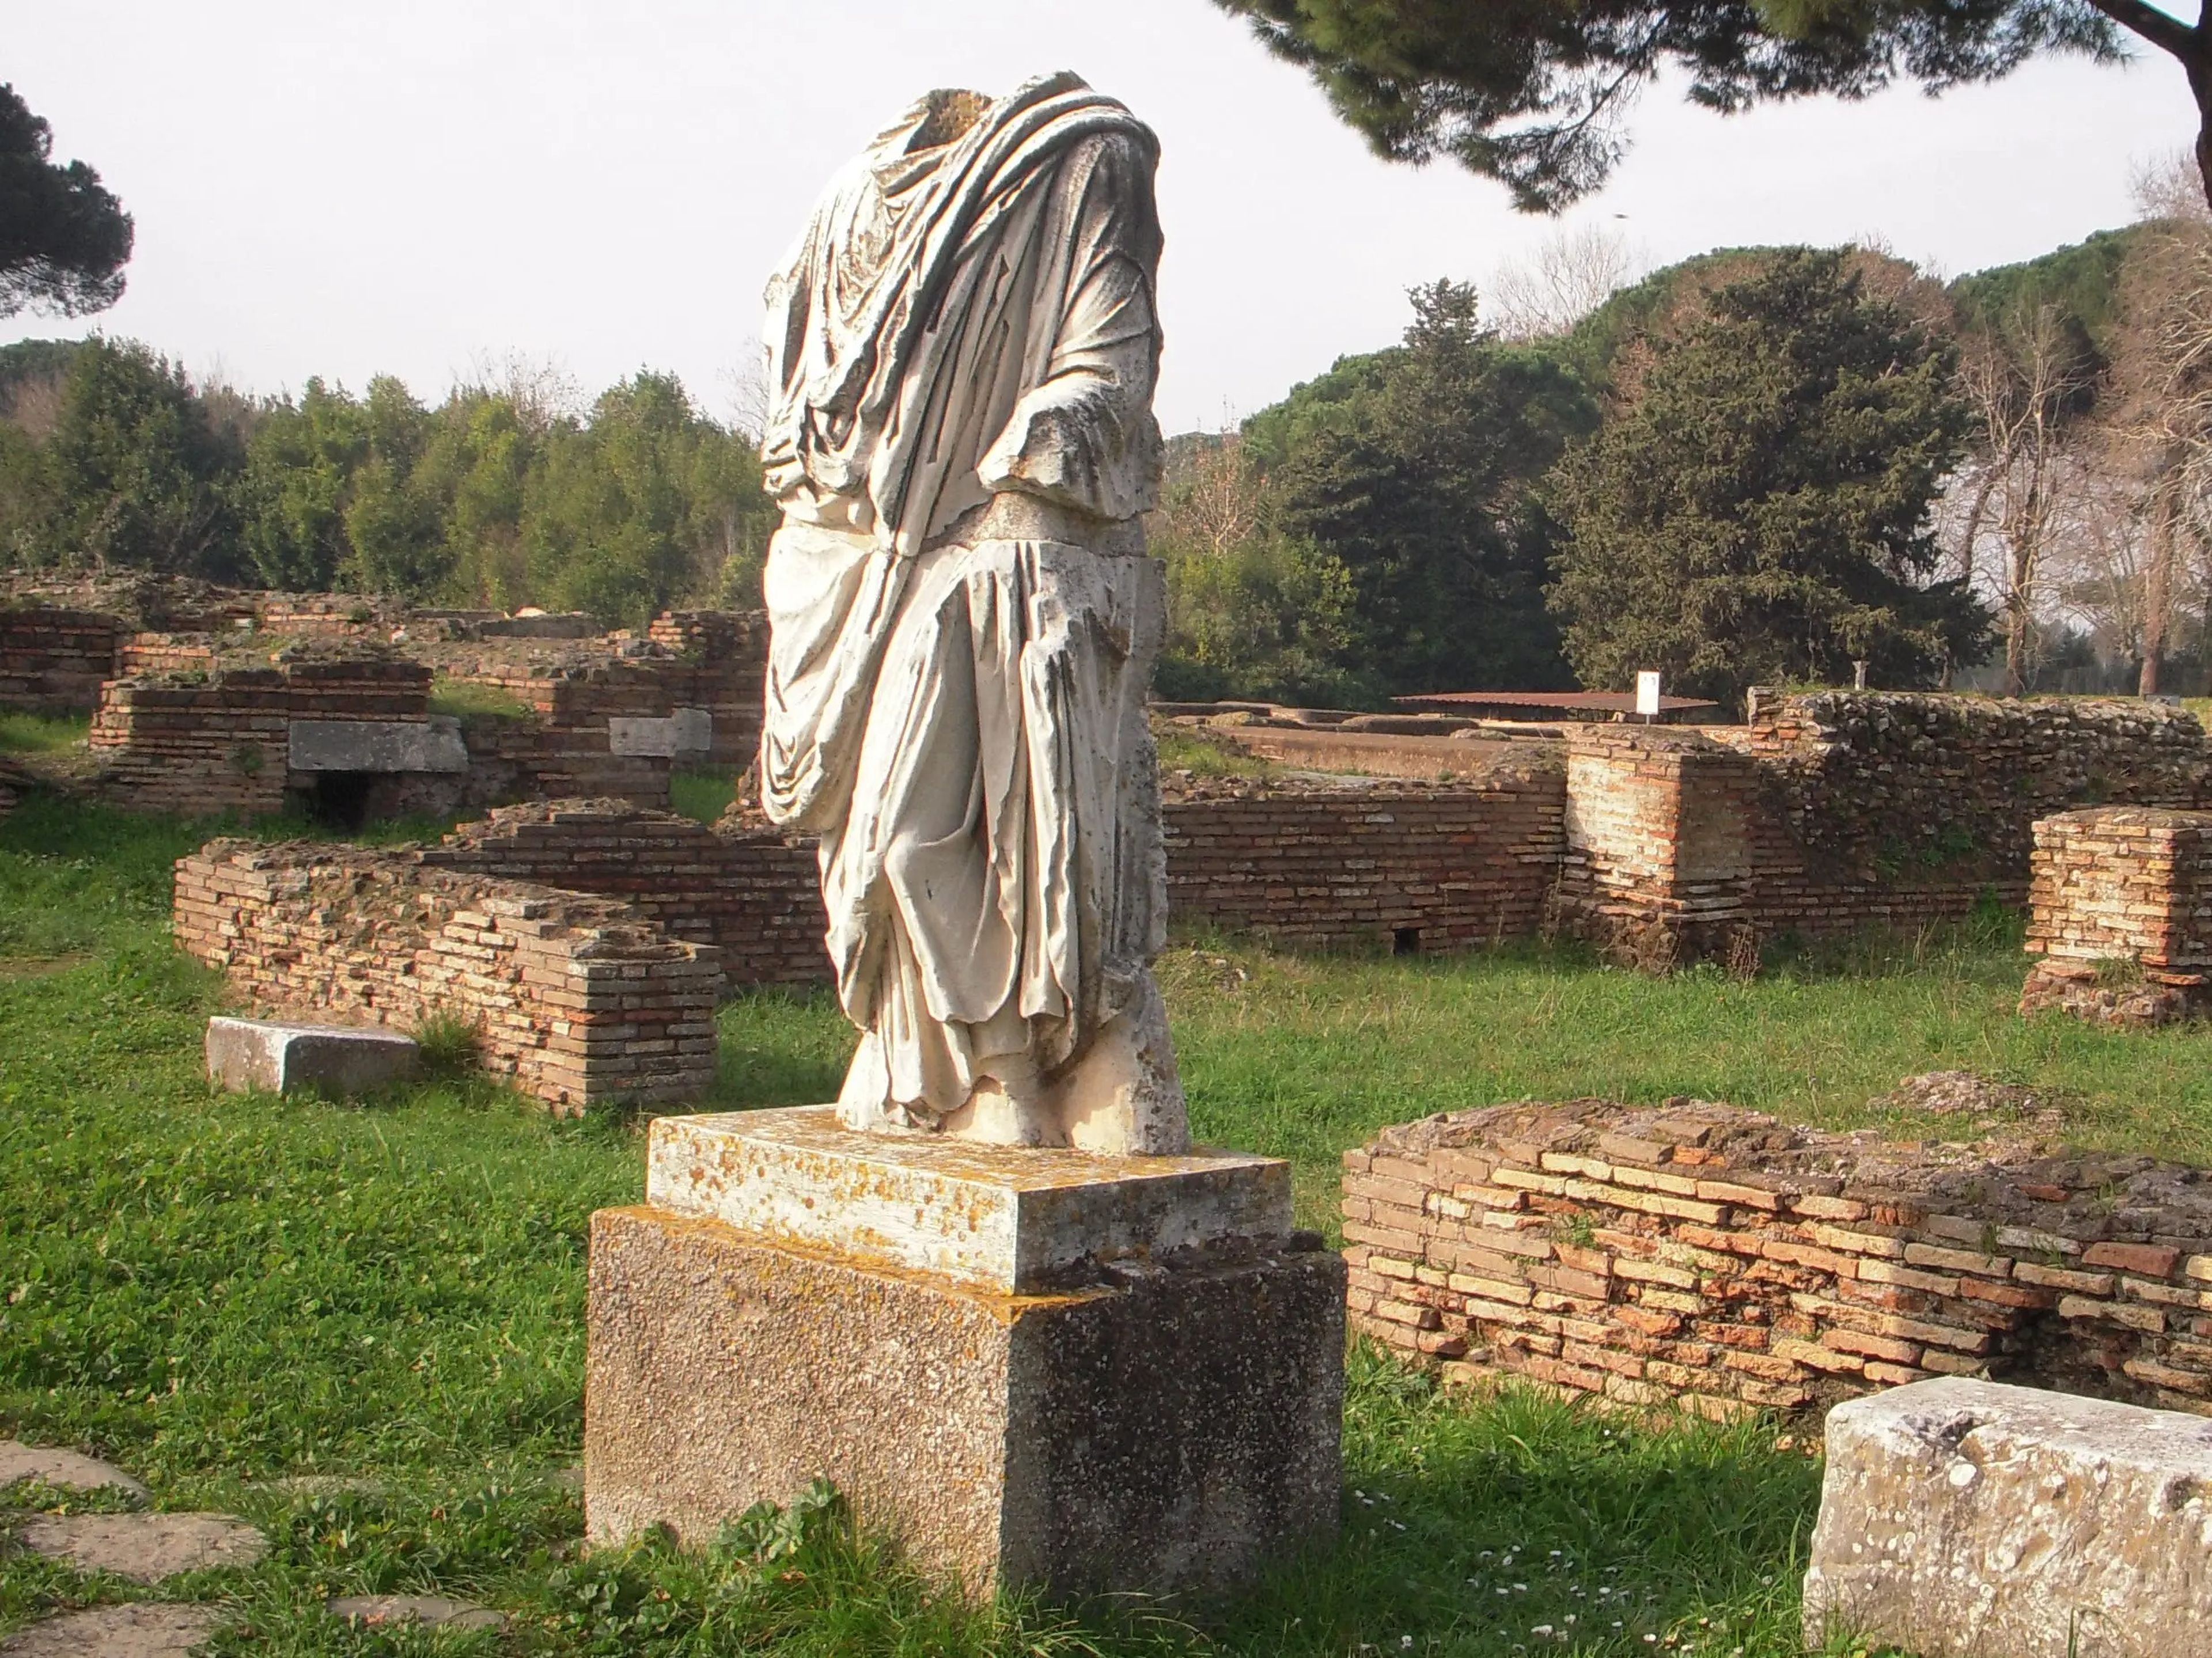 Copia de una estatua en Ostia Antica (la original está en el museo).